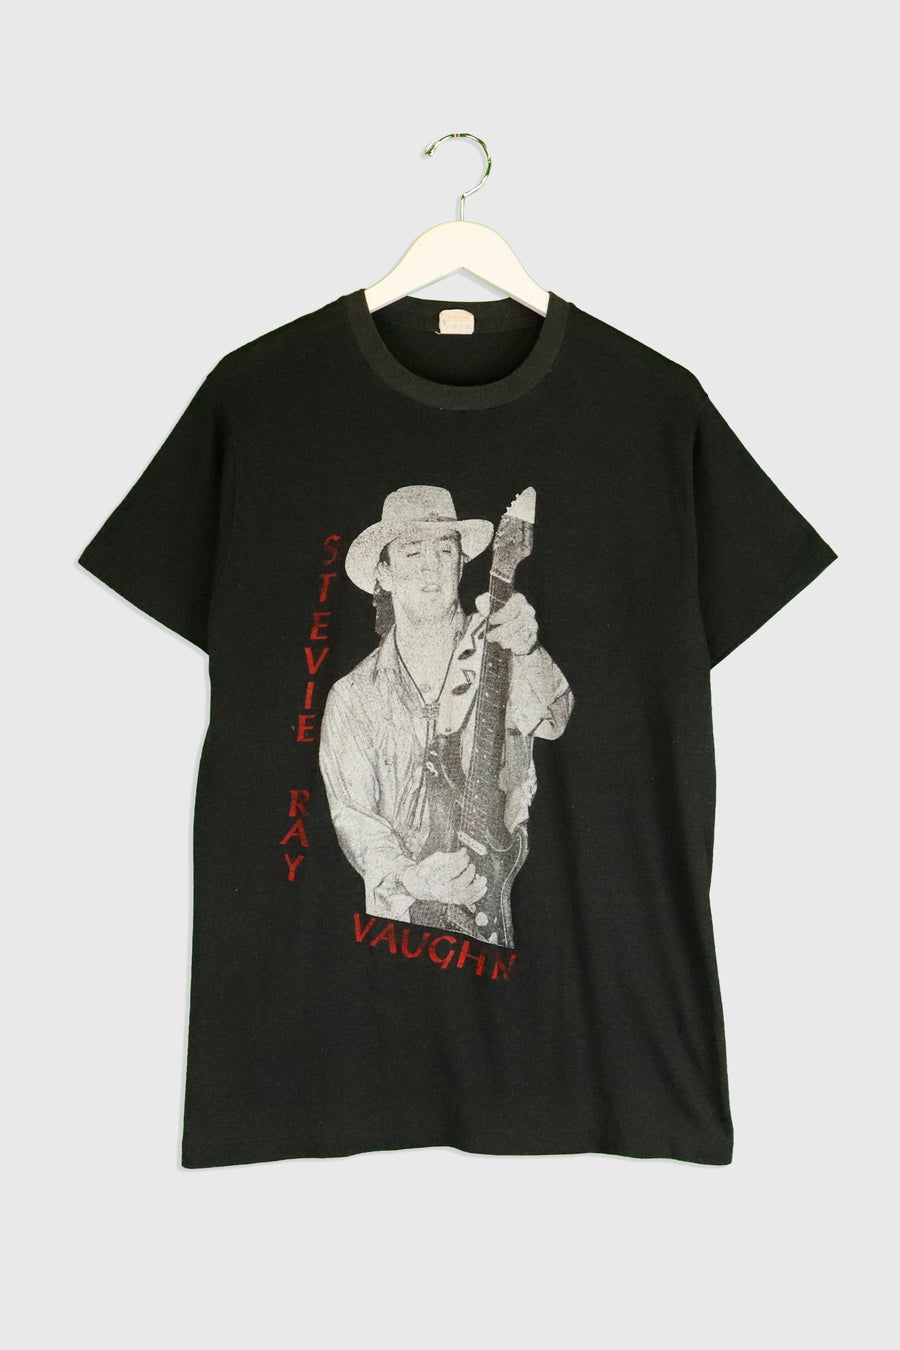 Vintage 1989 Stevie Ray Vaughn Double Trouble Faded Tour T Shirt Sz L